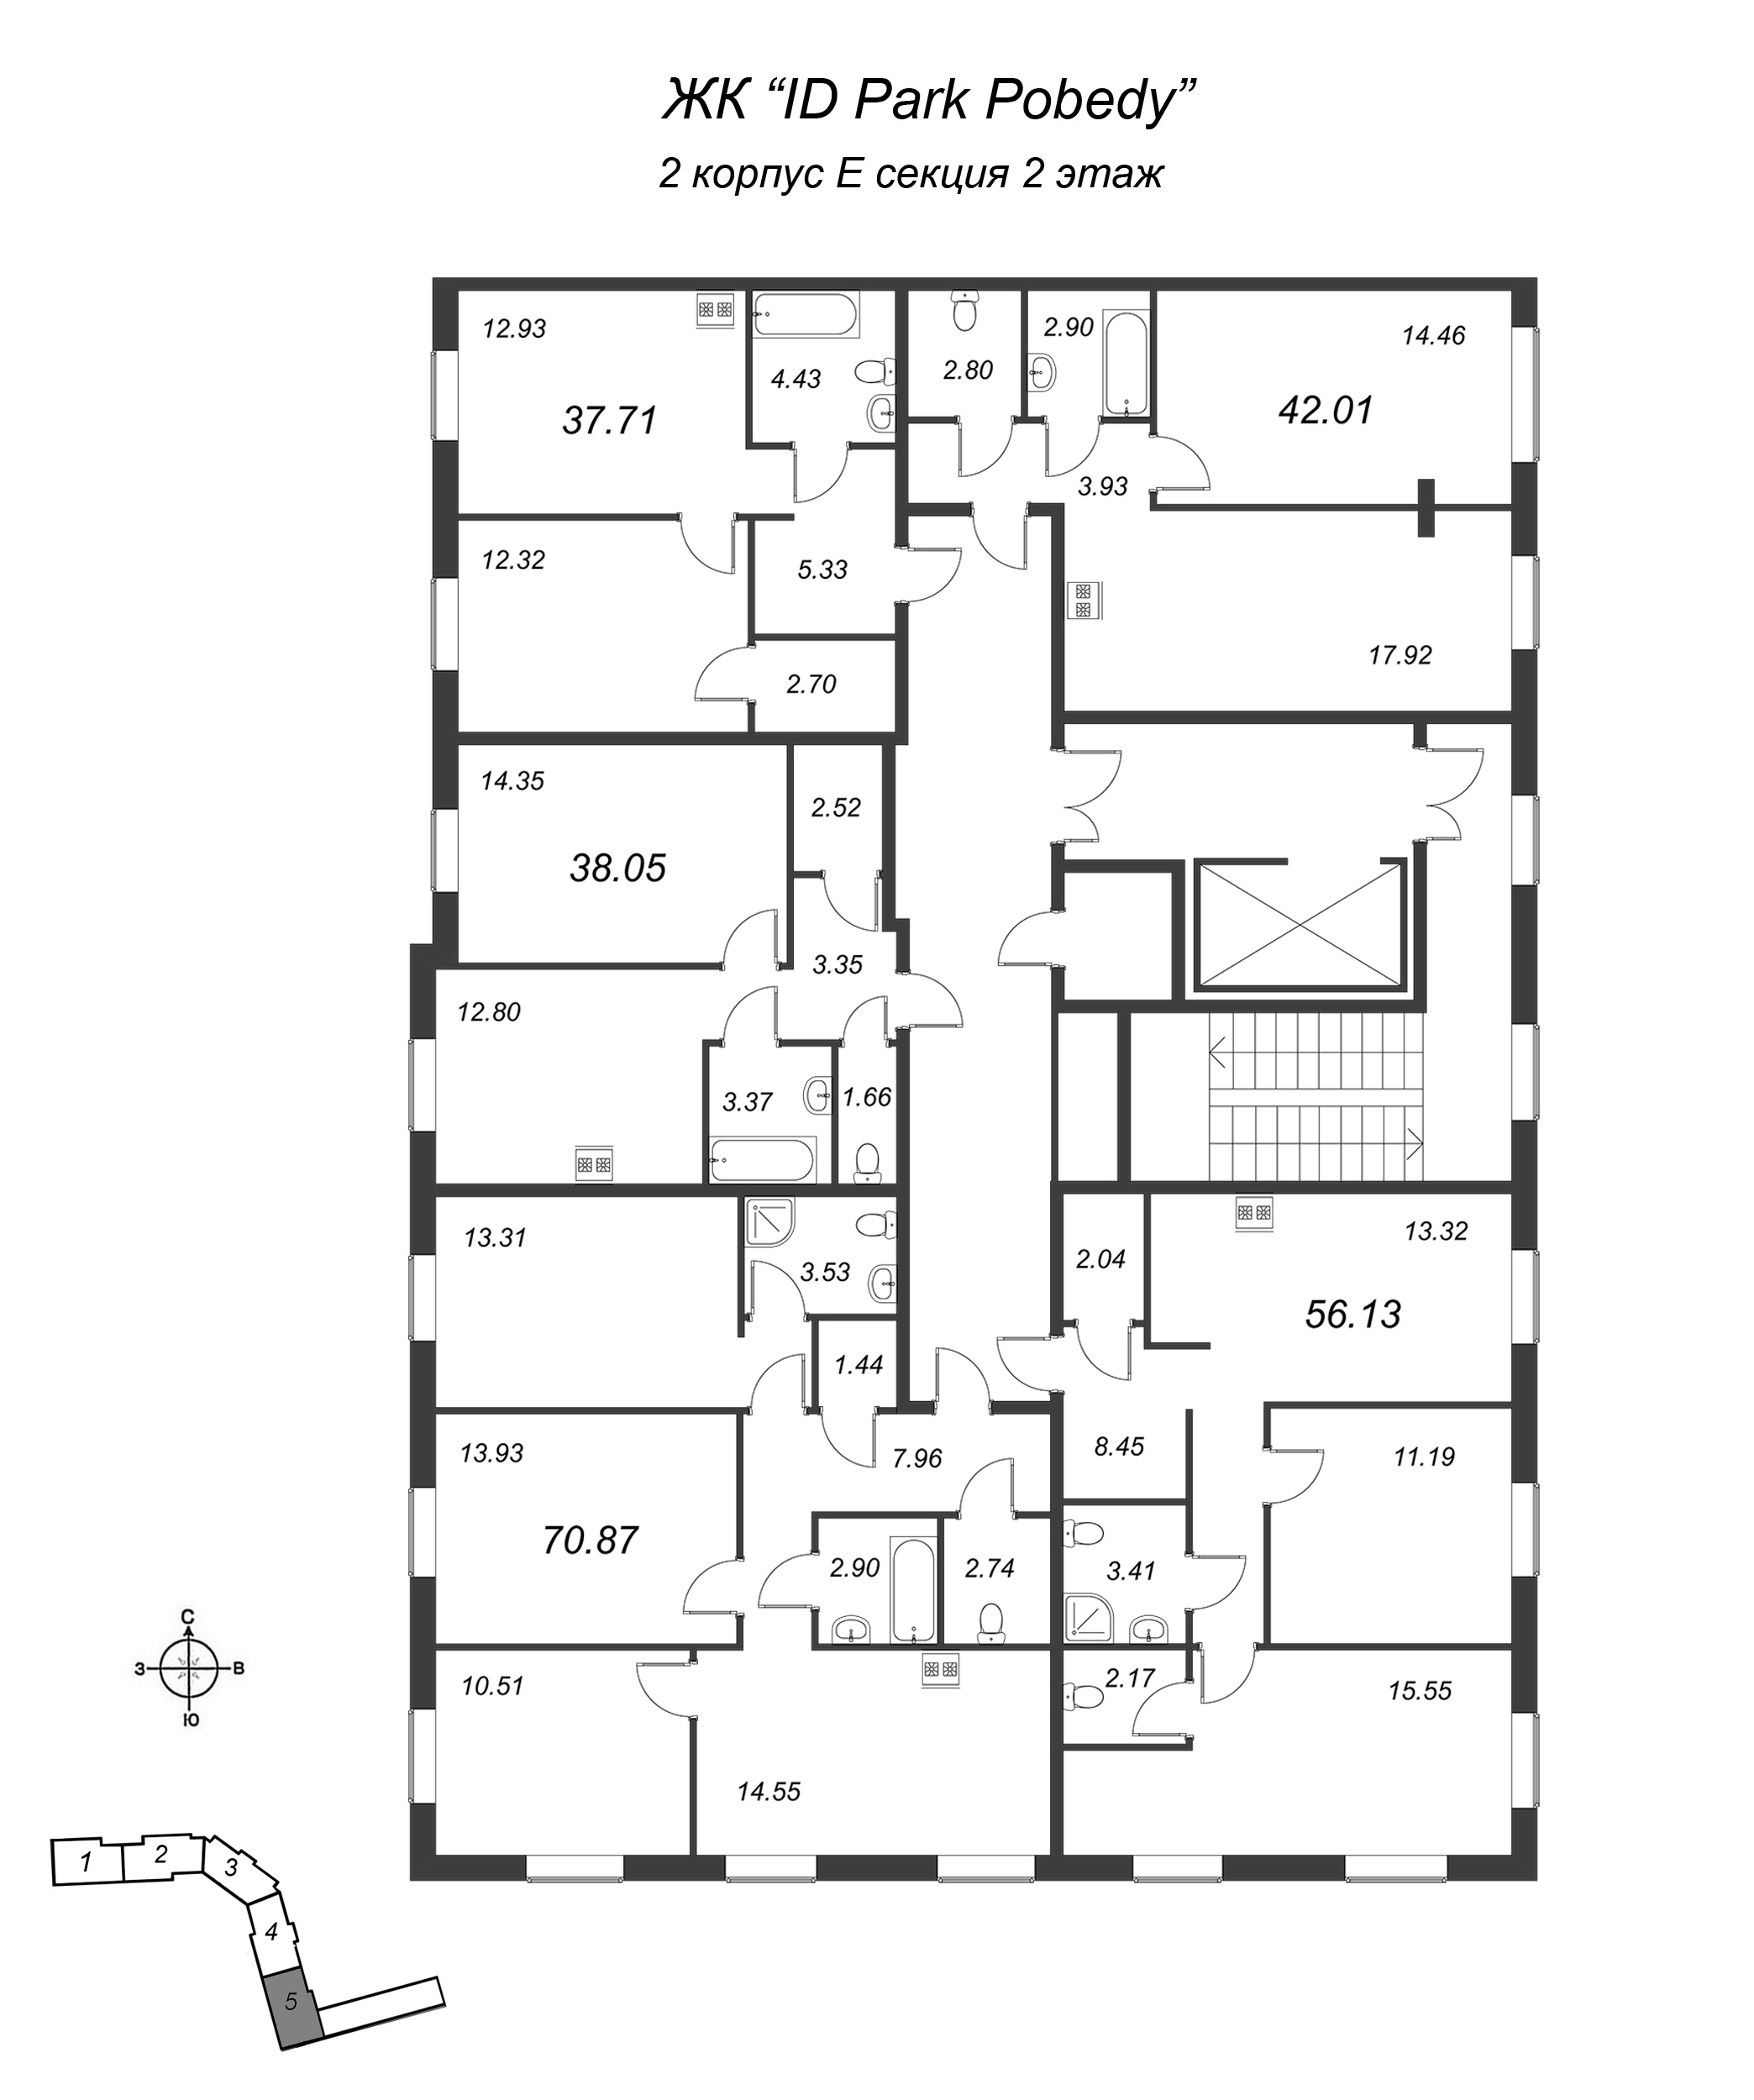 2-комнатная квартира, 56.13 м² в ЖК "ID Park Pobedy" - планировка этажа